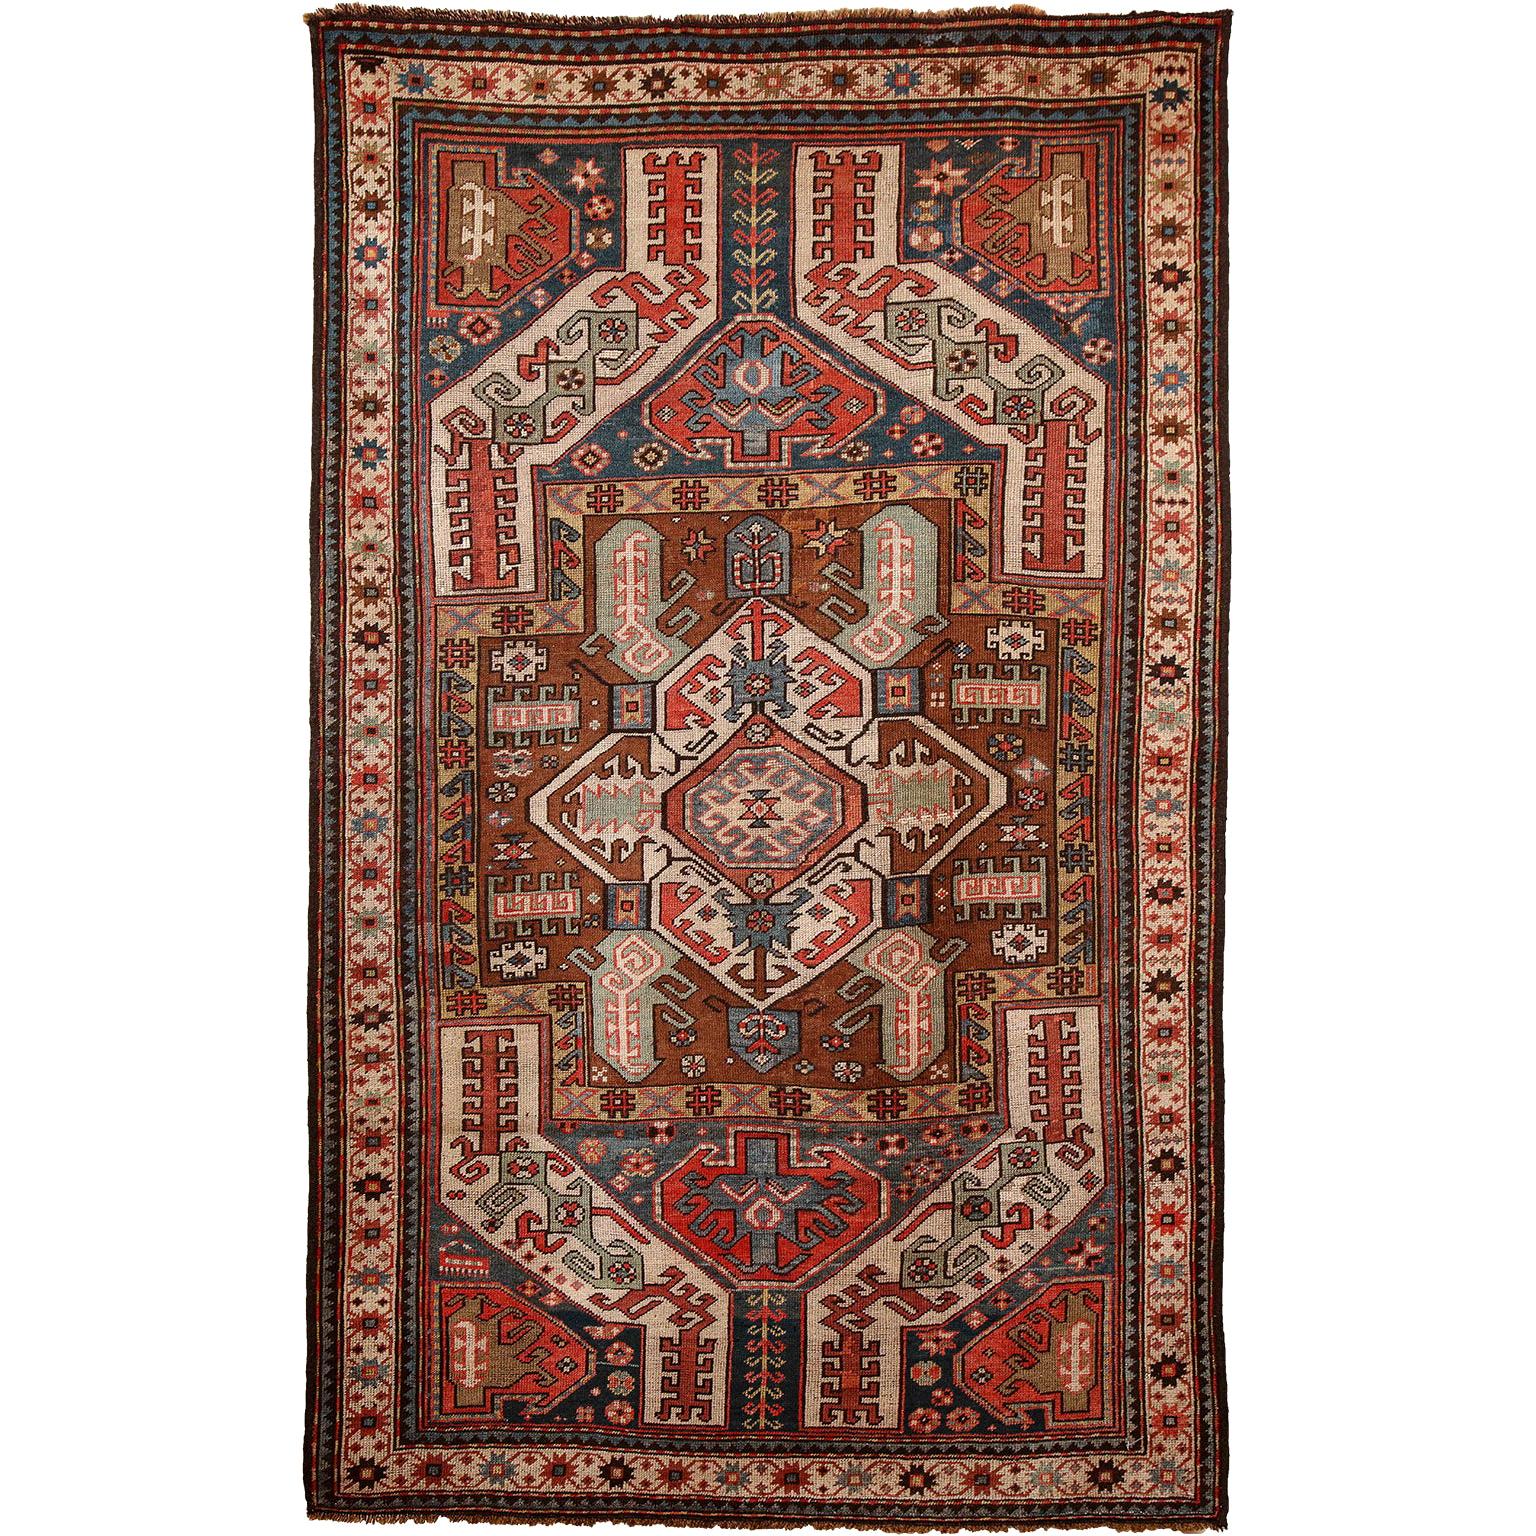 Antiker kaukasischer Teppich aus den 1880er Jahren, 4' x 6'